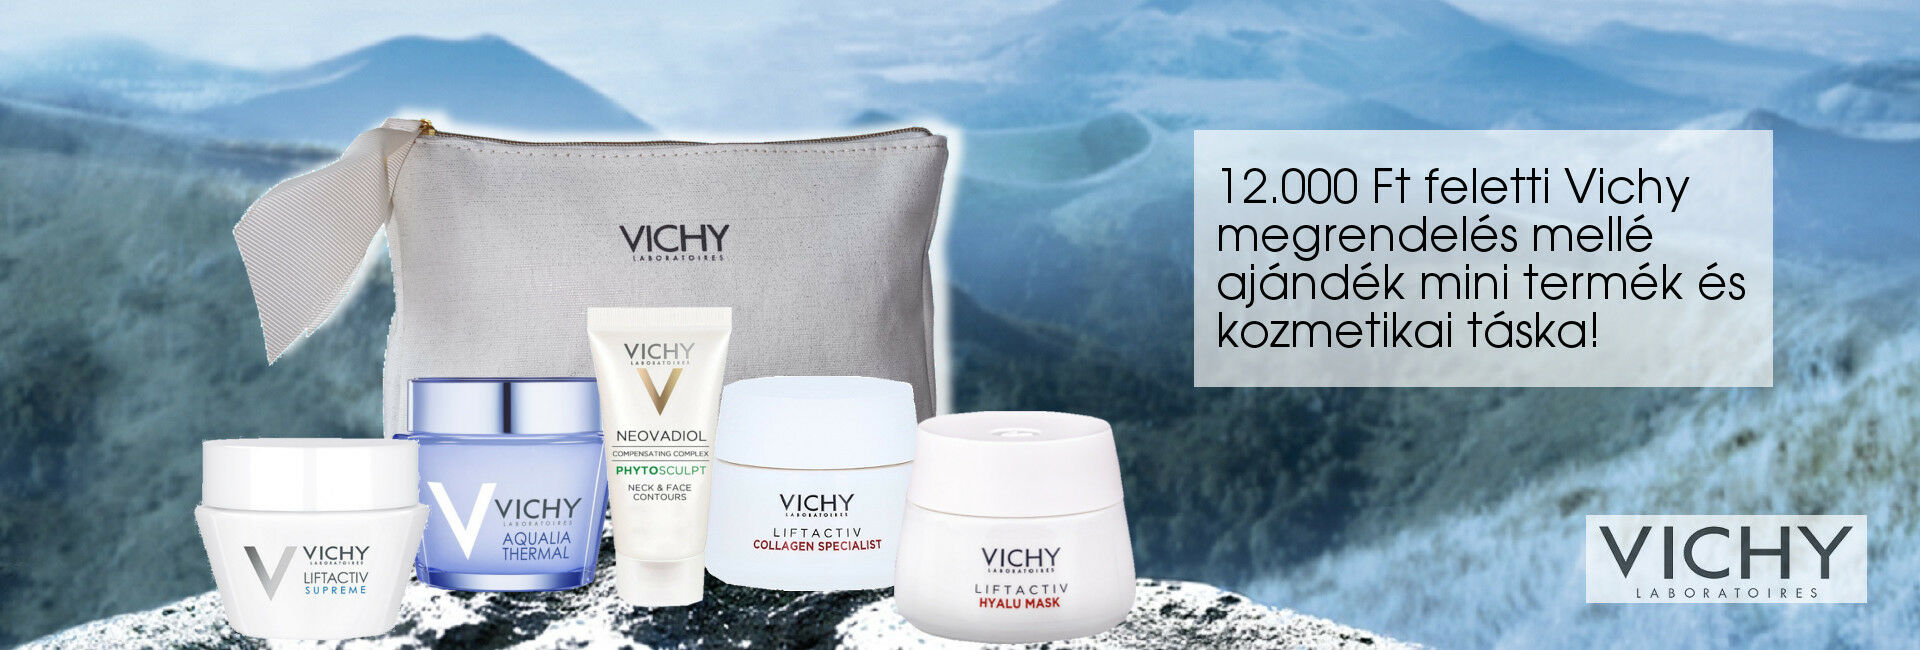 2021. március 1-8. között minden 12.000 Ft feletti Vichy megrendelés mellé választható Vichy mini arcápolót és kozmetikai táskát adunk ajándékba!